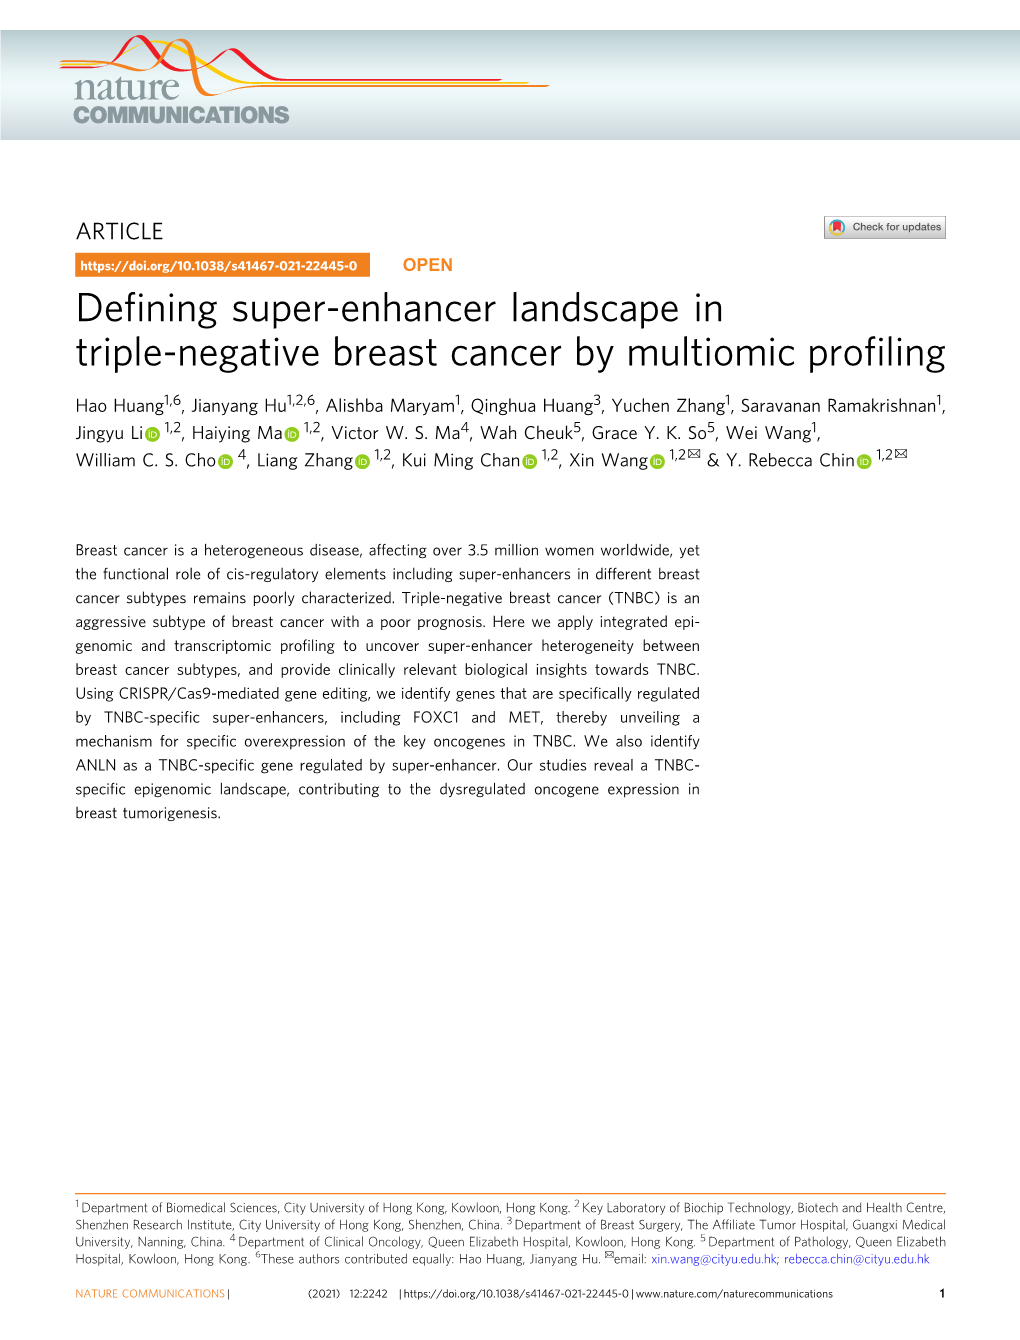 Defining Super-Enhancer Landscape in Triple-Negative Breast Cancer By